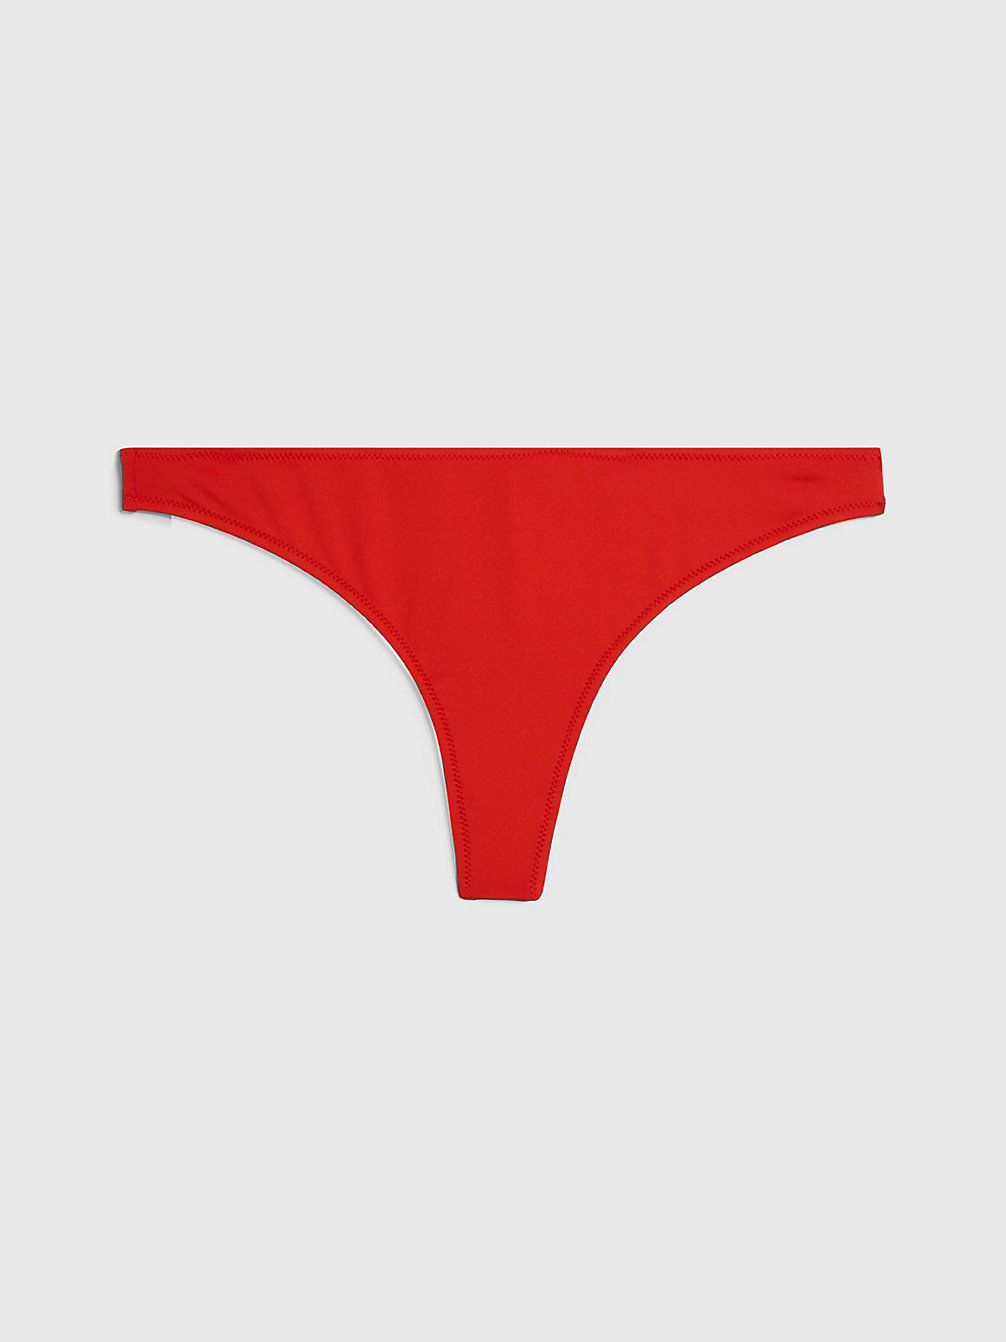 CAJUN RED > Thong Bikinihosen – CK Monogram > undefined Damen - Calvin Klein